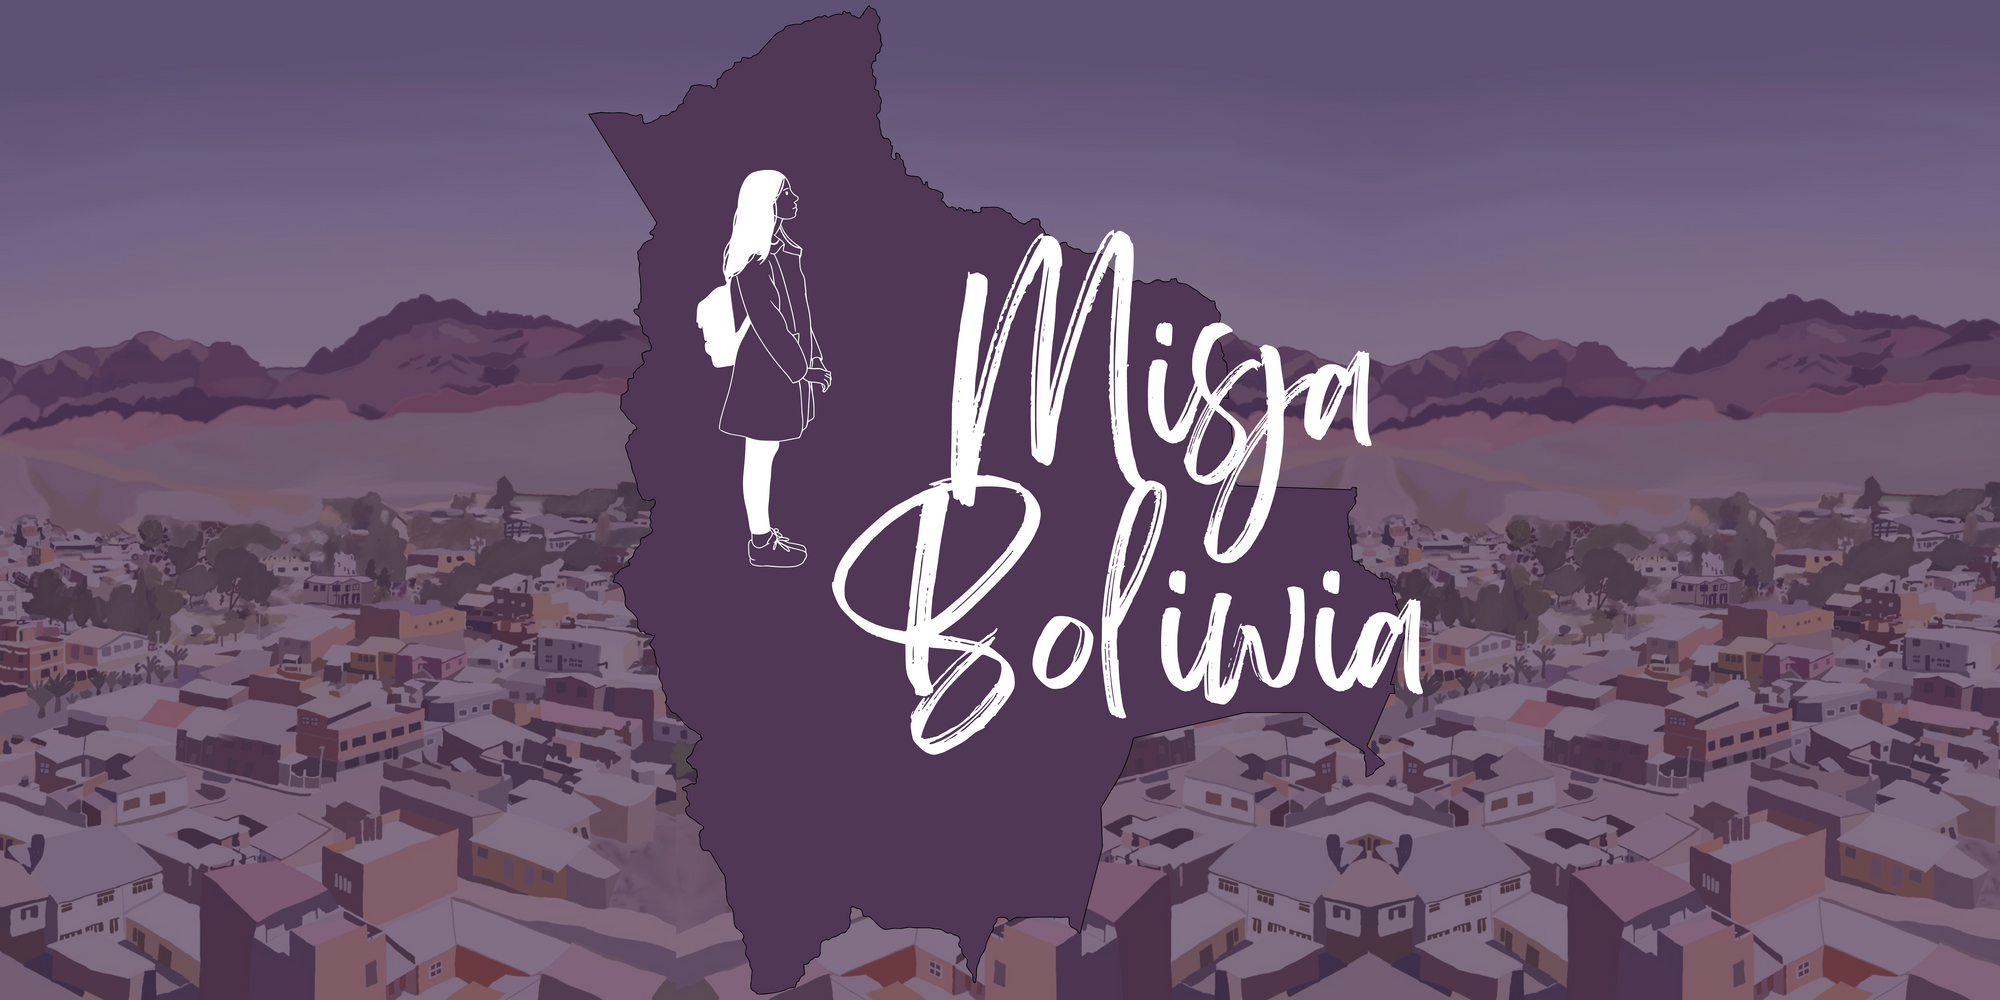 Projekt Boliwia: "Razem ku marzeniom"